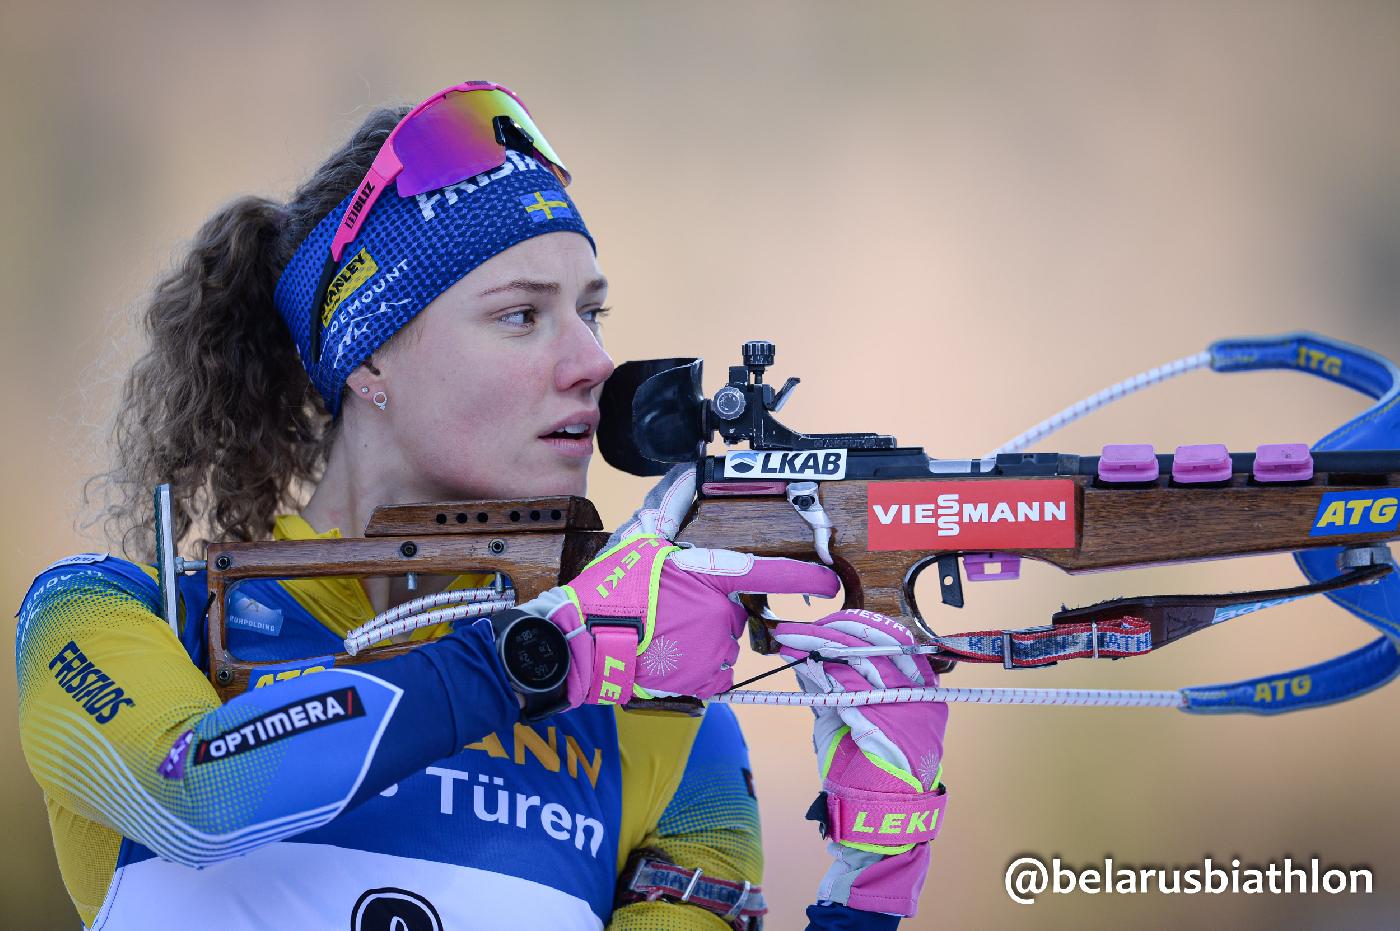 Шведка Ханна Эберг выиграла гонку с массовым стартом в Поклюке